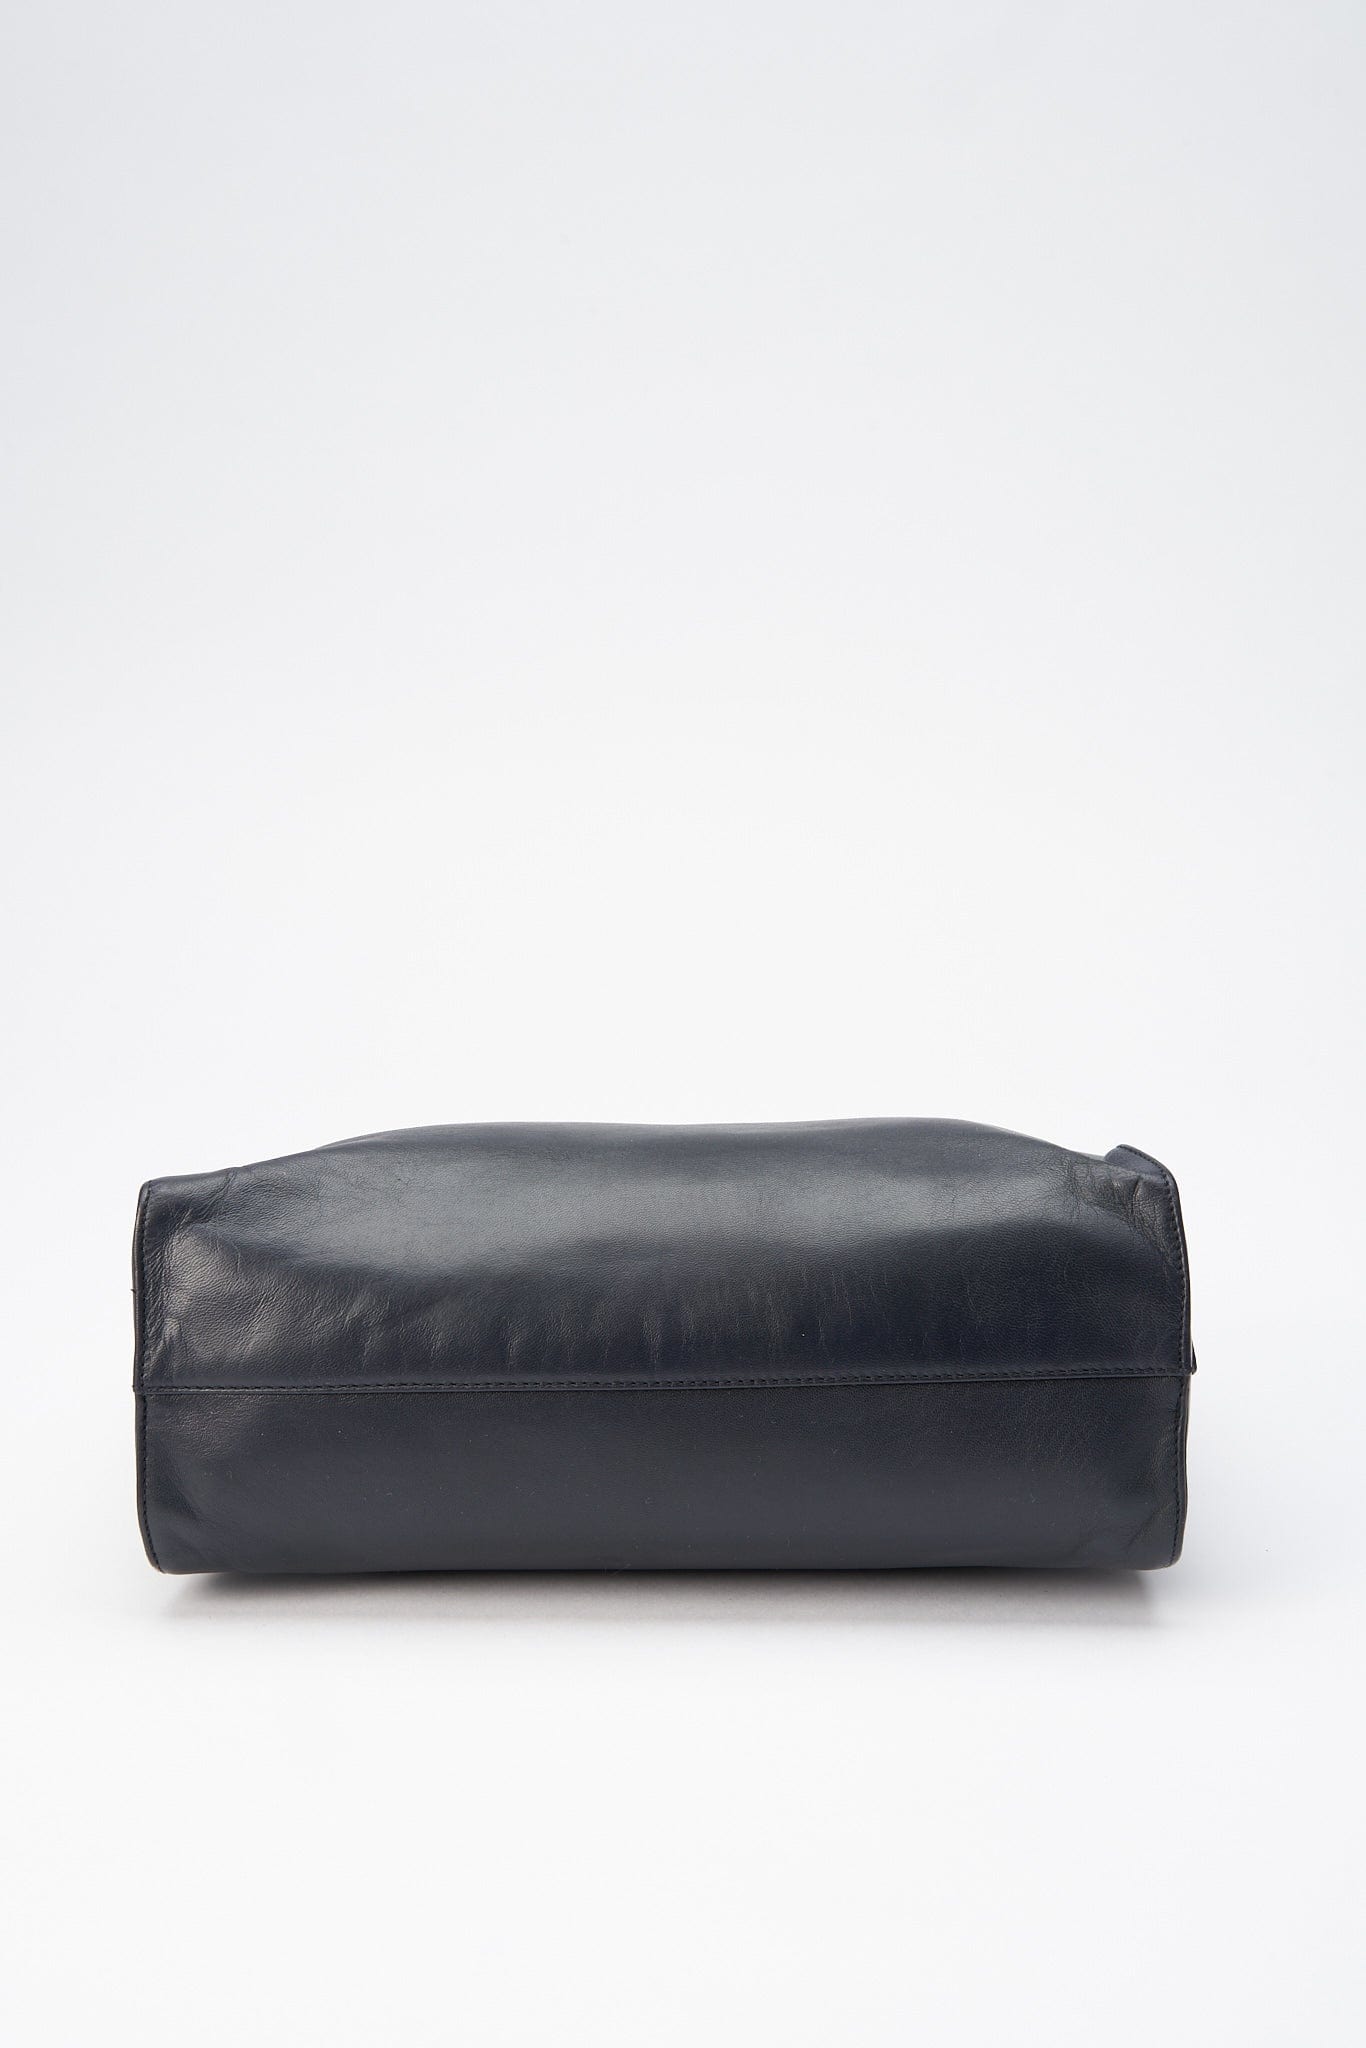 A vintage 90's Prada Navy Leather Shoulder Bag